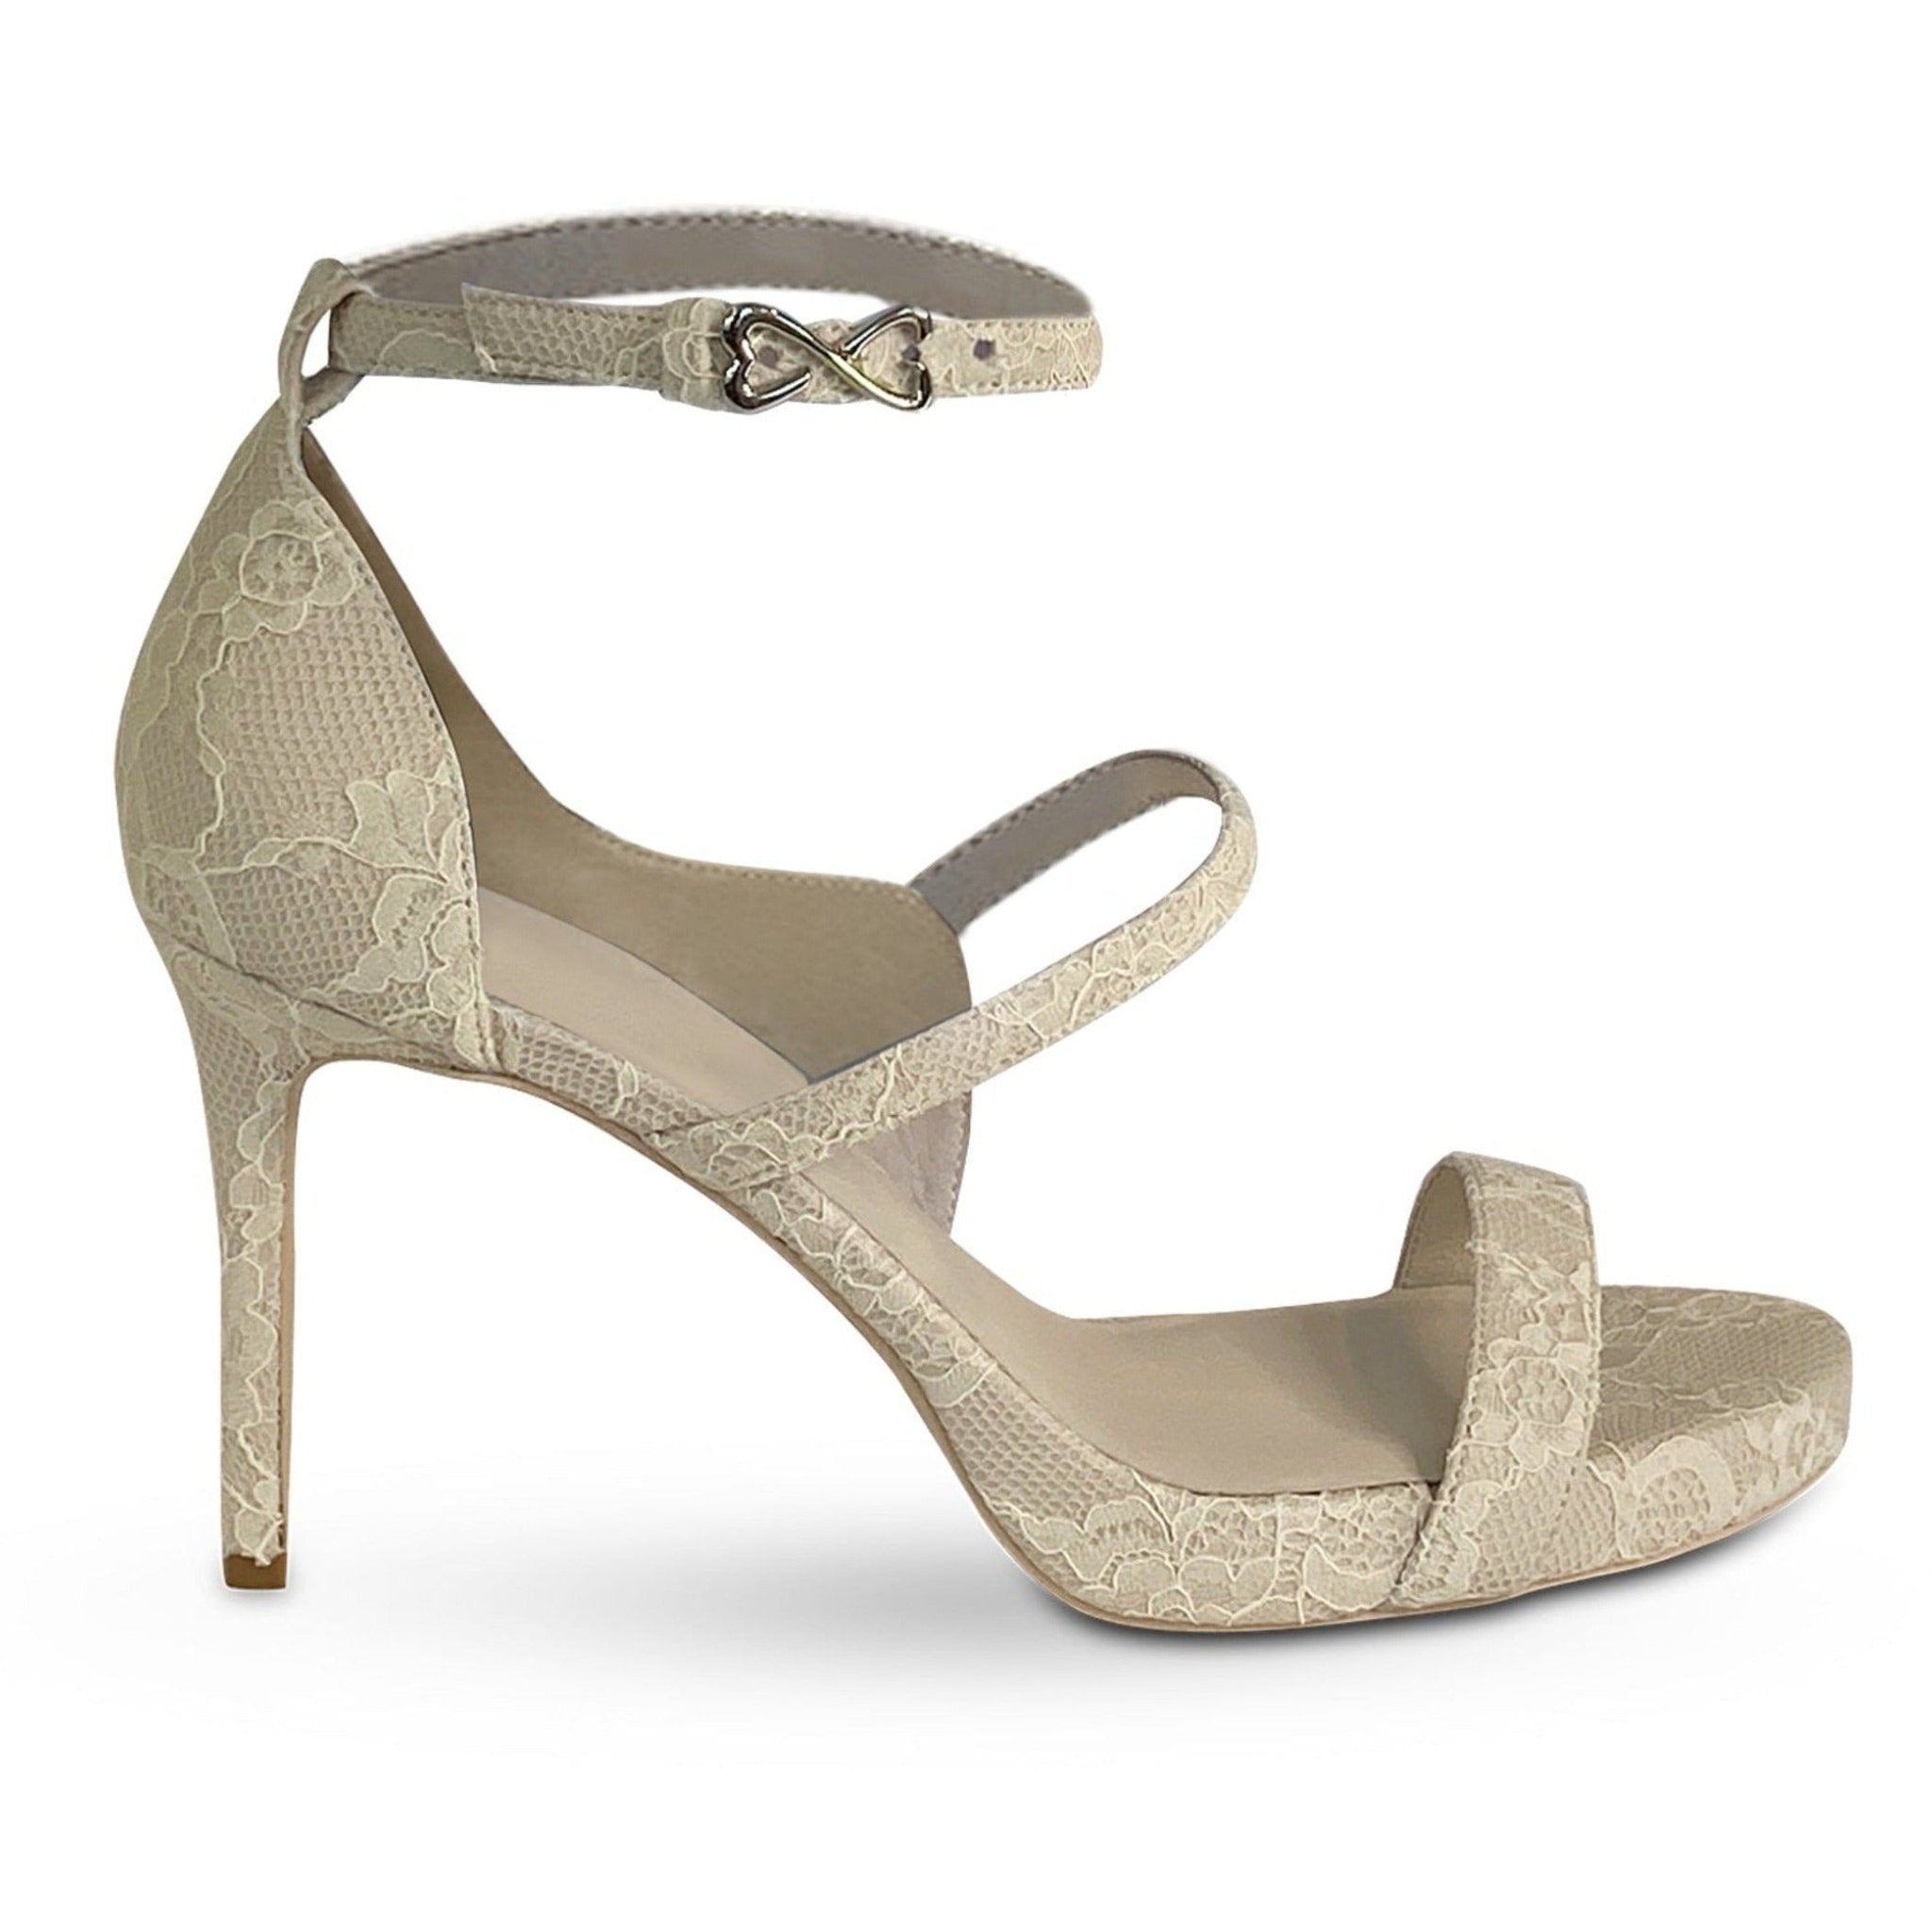 ivory bridal sandal heel platform lace overlay large sizes